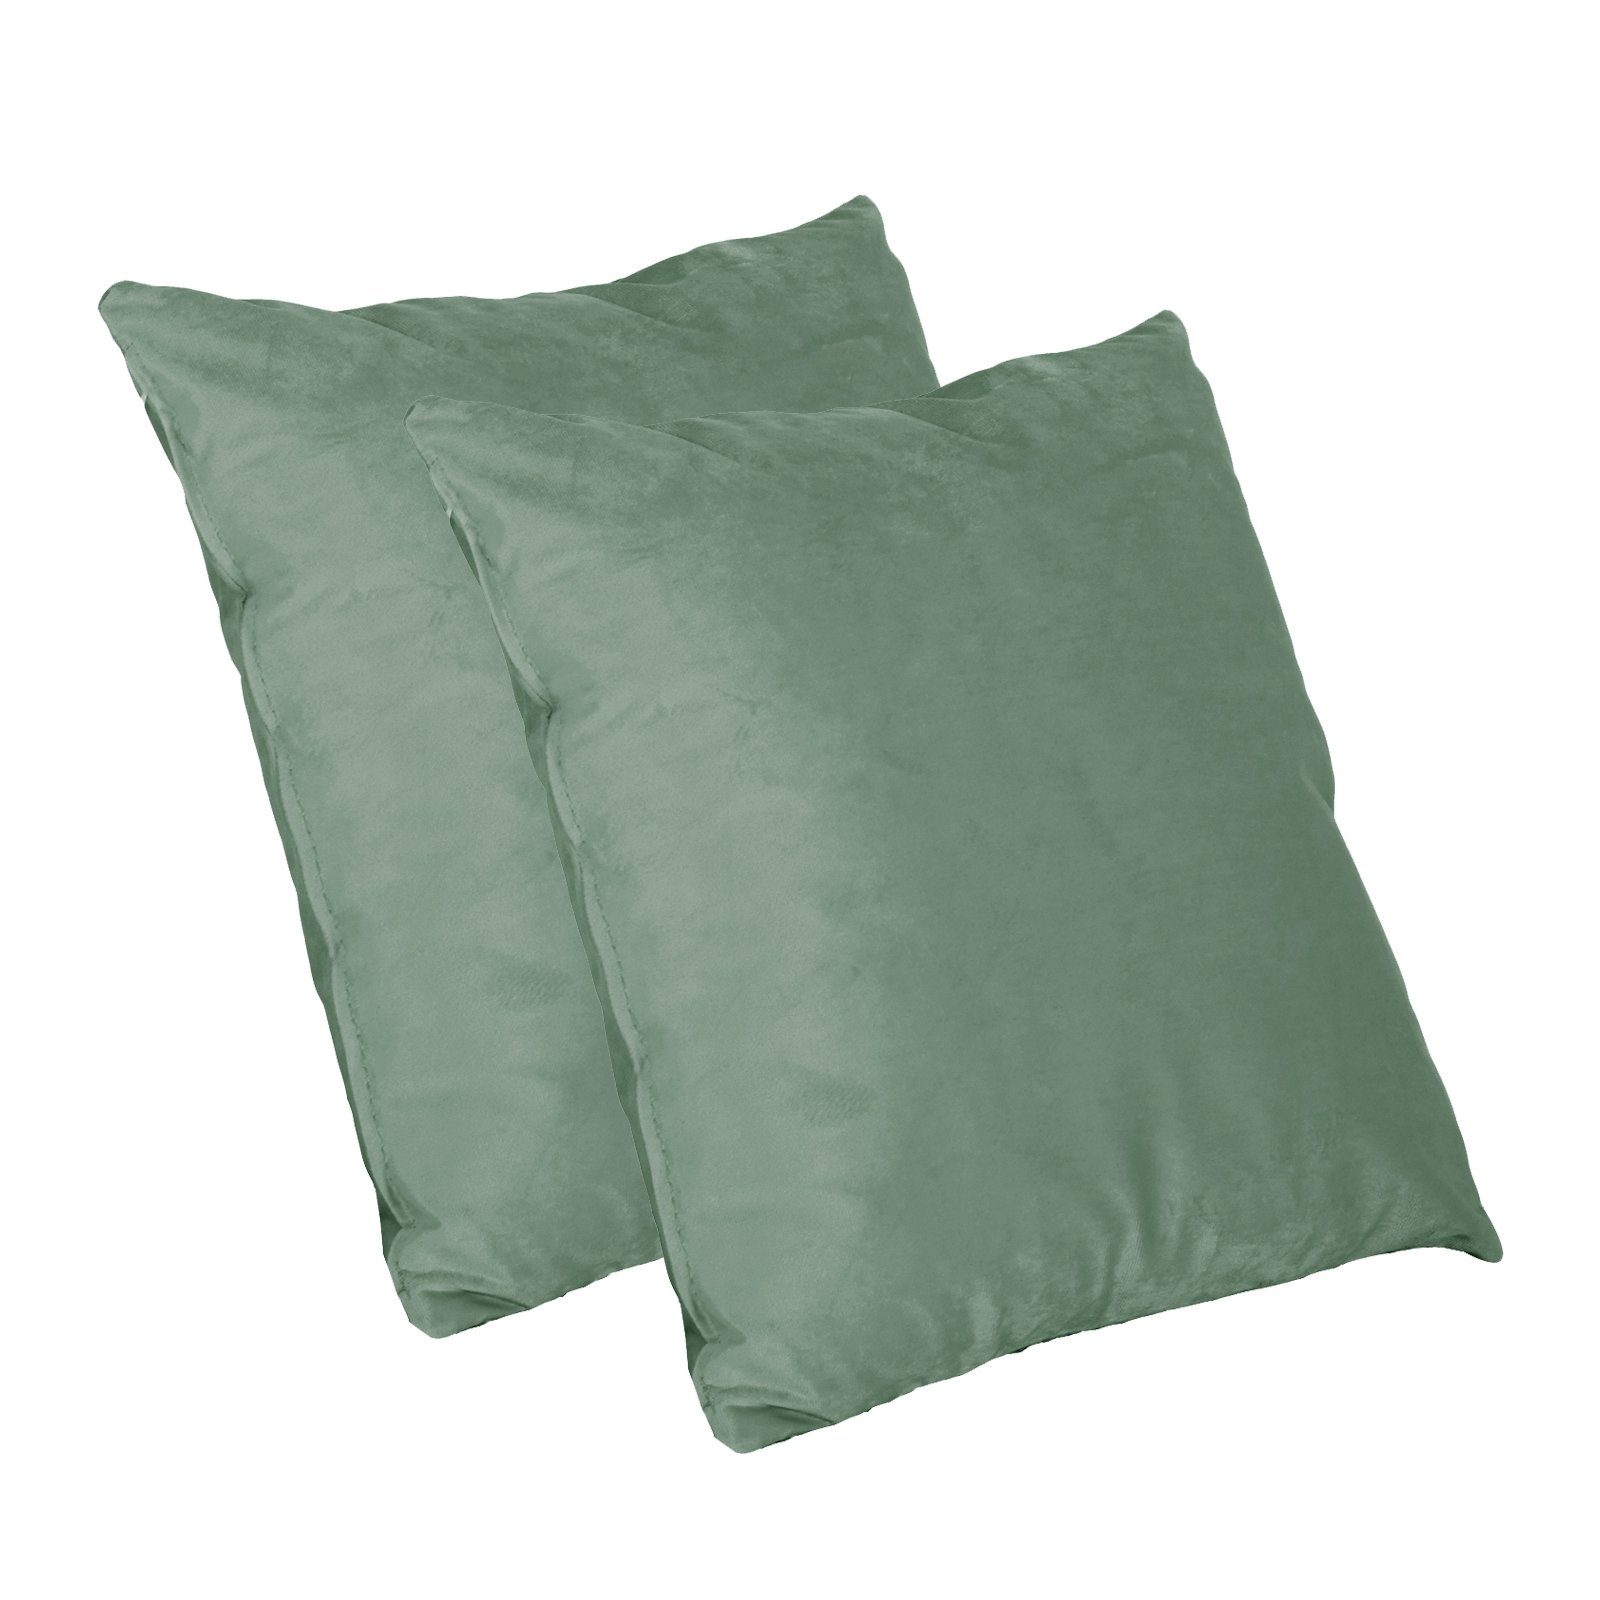 Graugrüne Kissen online kaufen | OTTO